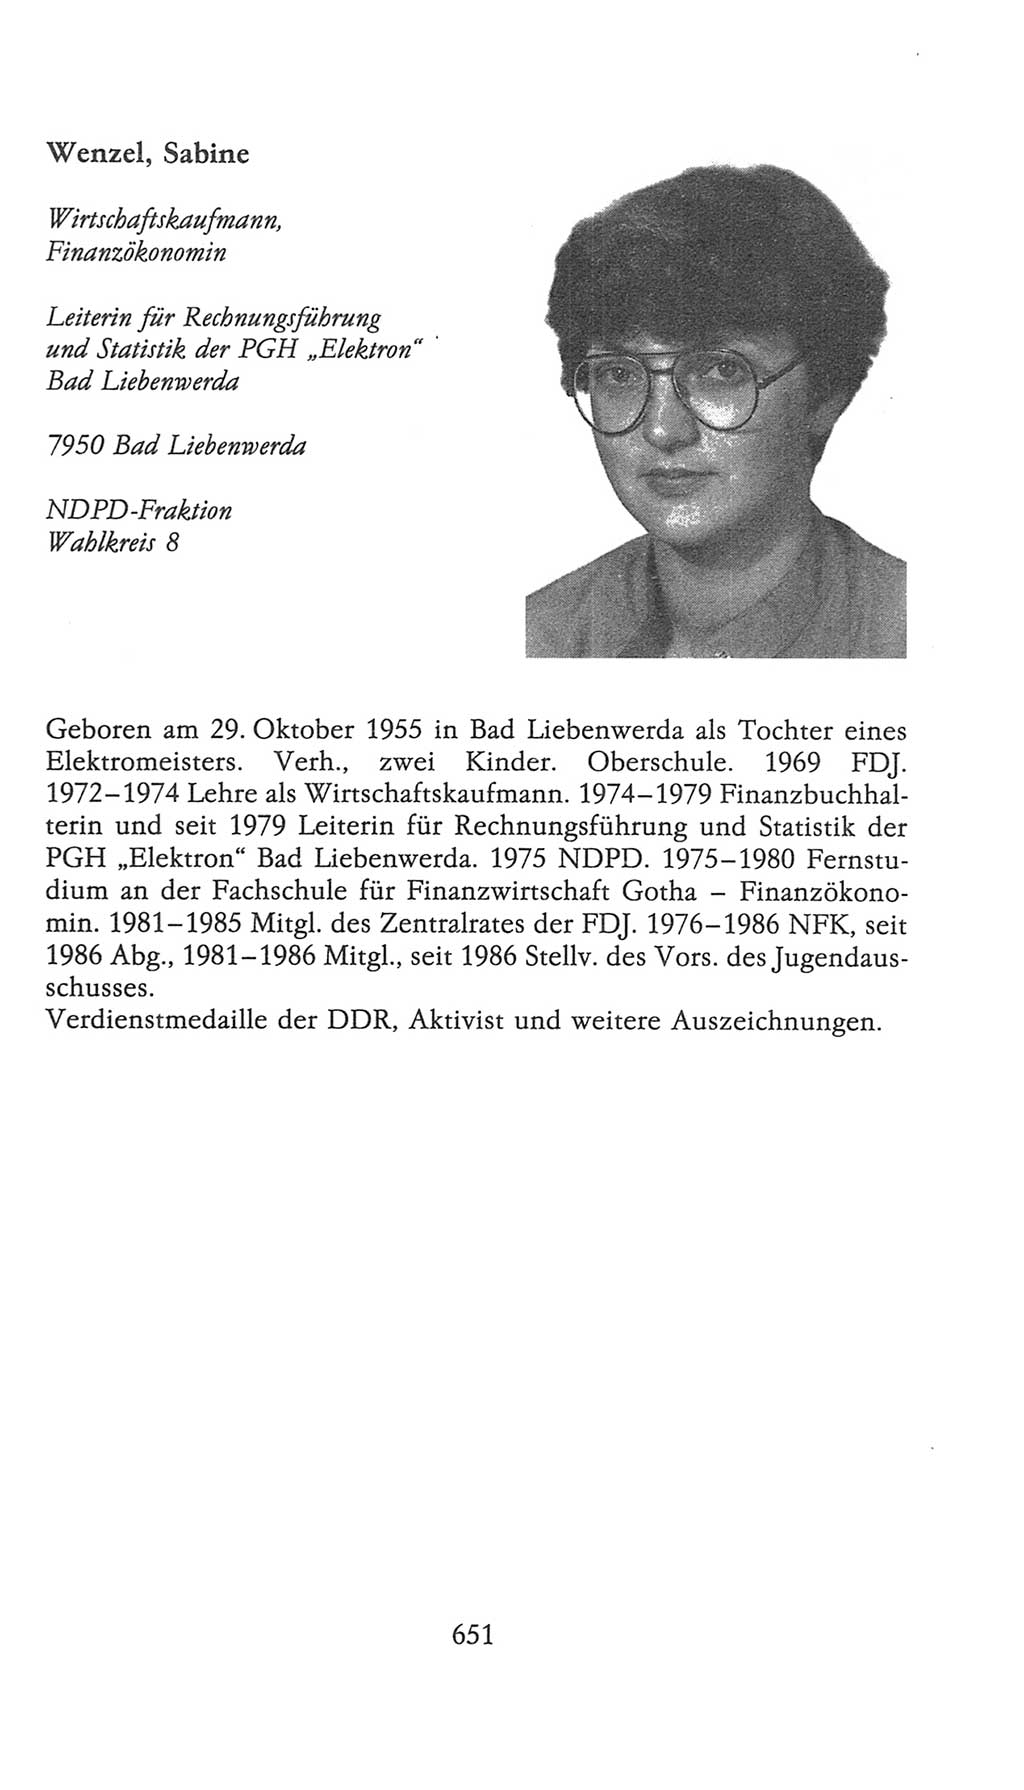 Volkskammer (VK) der Deutschen Demokratischen Republik (DDR), 9. Wahlperiode 1986-1990, Seite 651 (VK. DDR 9. WP. 1986-1990, S. 651)